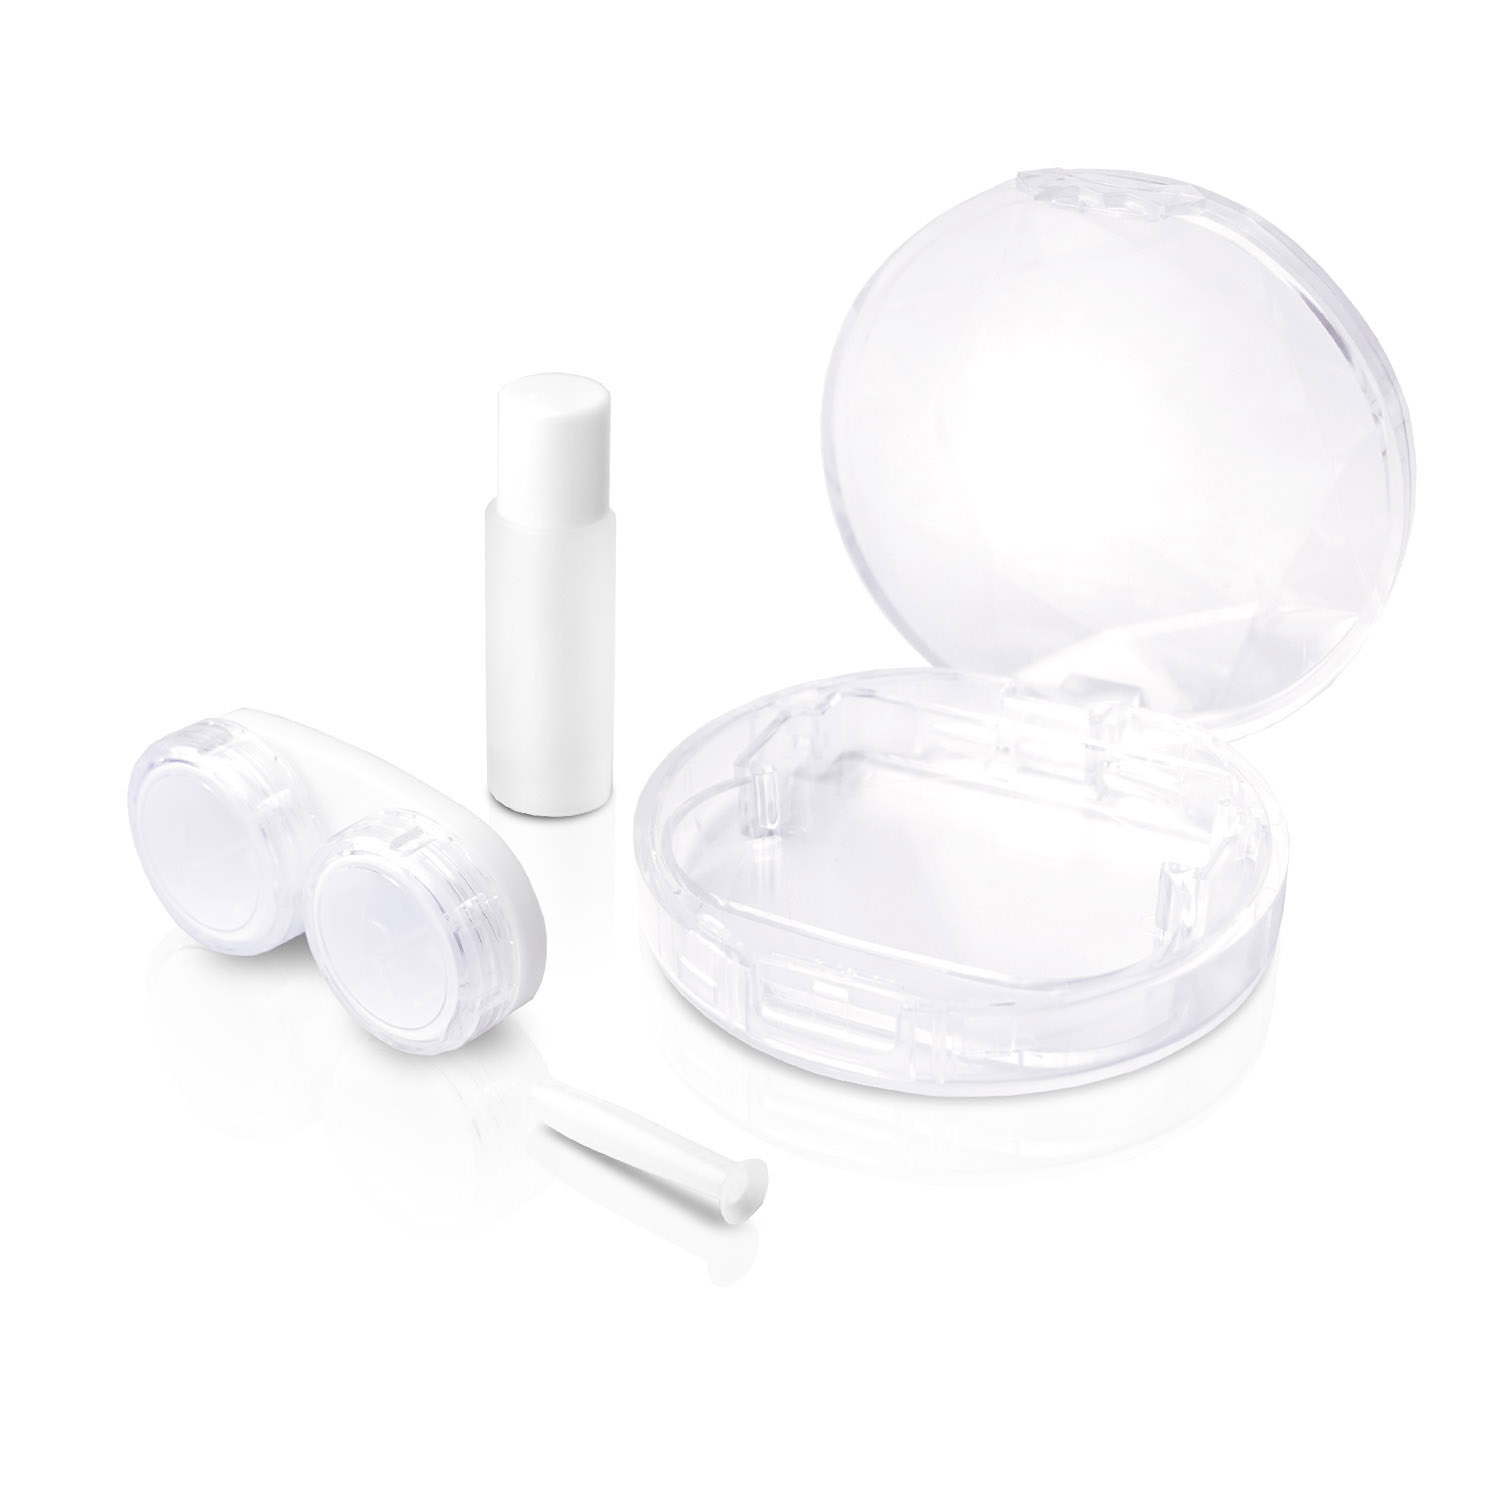 Kontaktlinsen Kontaktlinsen Linsensauger, harte JB Kit Travel für Travel Set Lösung-Behältnis mit WHITE und Case, 4in1 4-in-1 Behälter(L+R),